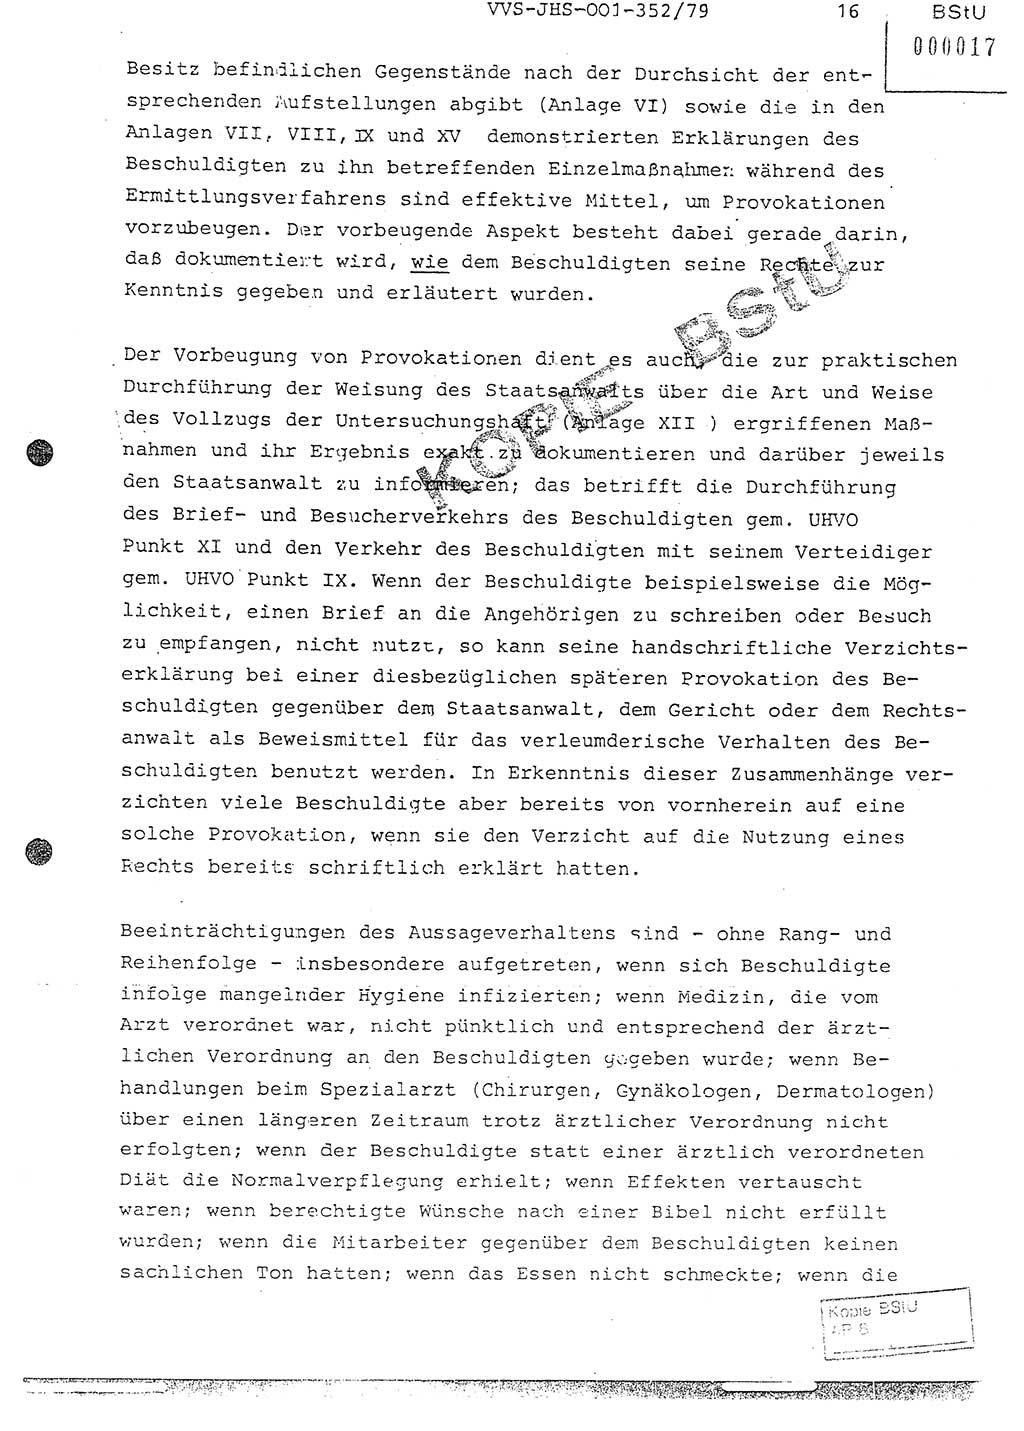 Diplomarbeit Hauptmann Peter Wittum (BV Bln. Abt. HA Ⅸ), Ministerium für Staatssicherheit (MfS) [Deutsche Demokratische Republik (DDR)], Juristische Hochschule (JHS), Vertrauliche Verschlußsache (VVS) o001-352/79, Potsdam 1979, Seite 16 (Dipl.-Arb. MfS DDR JHS VVS o001-352/79 1979, S. 16)